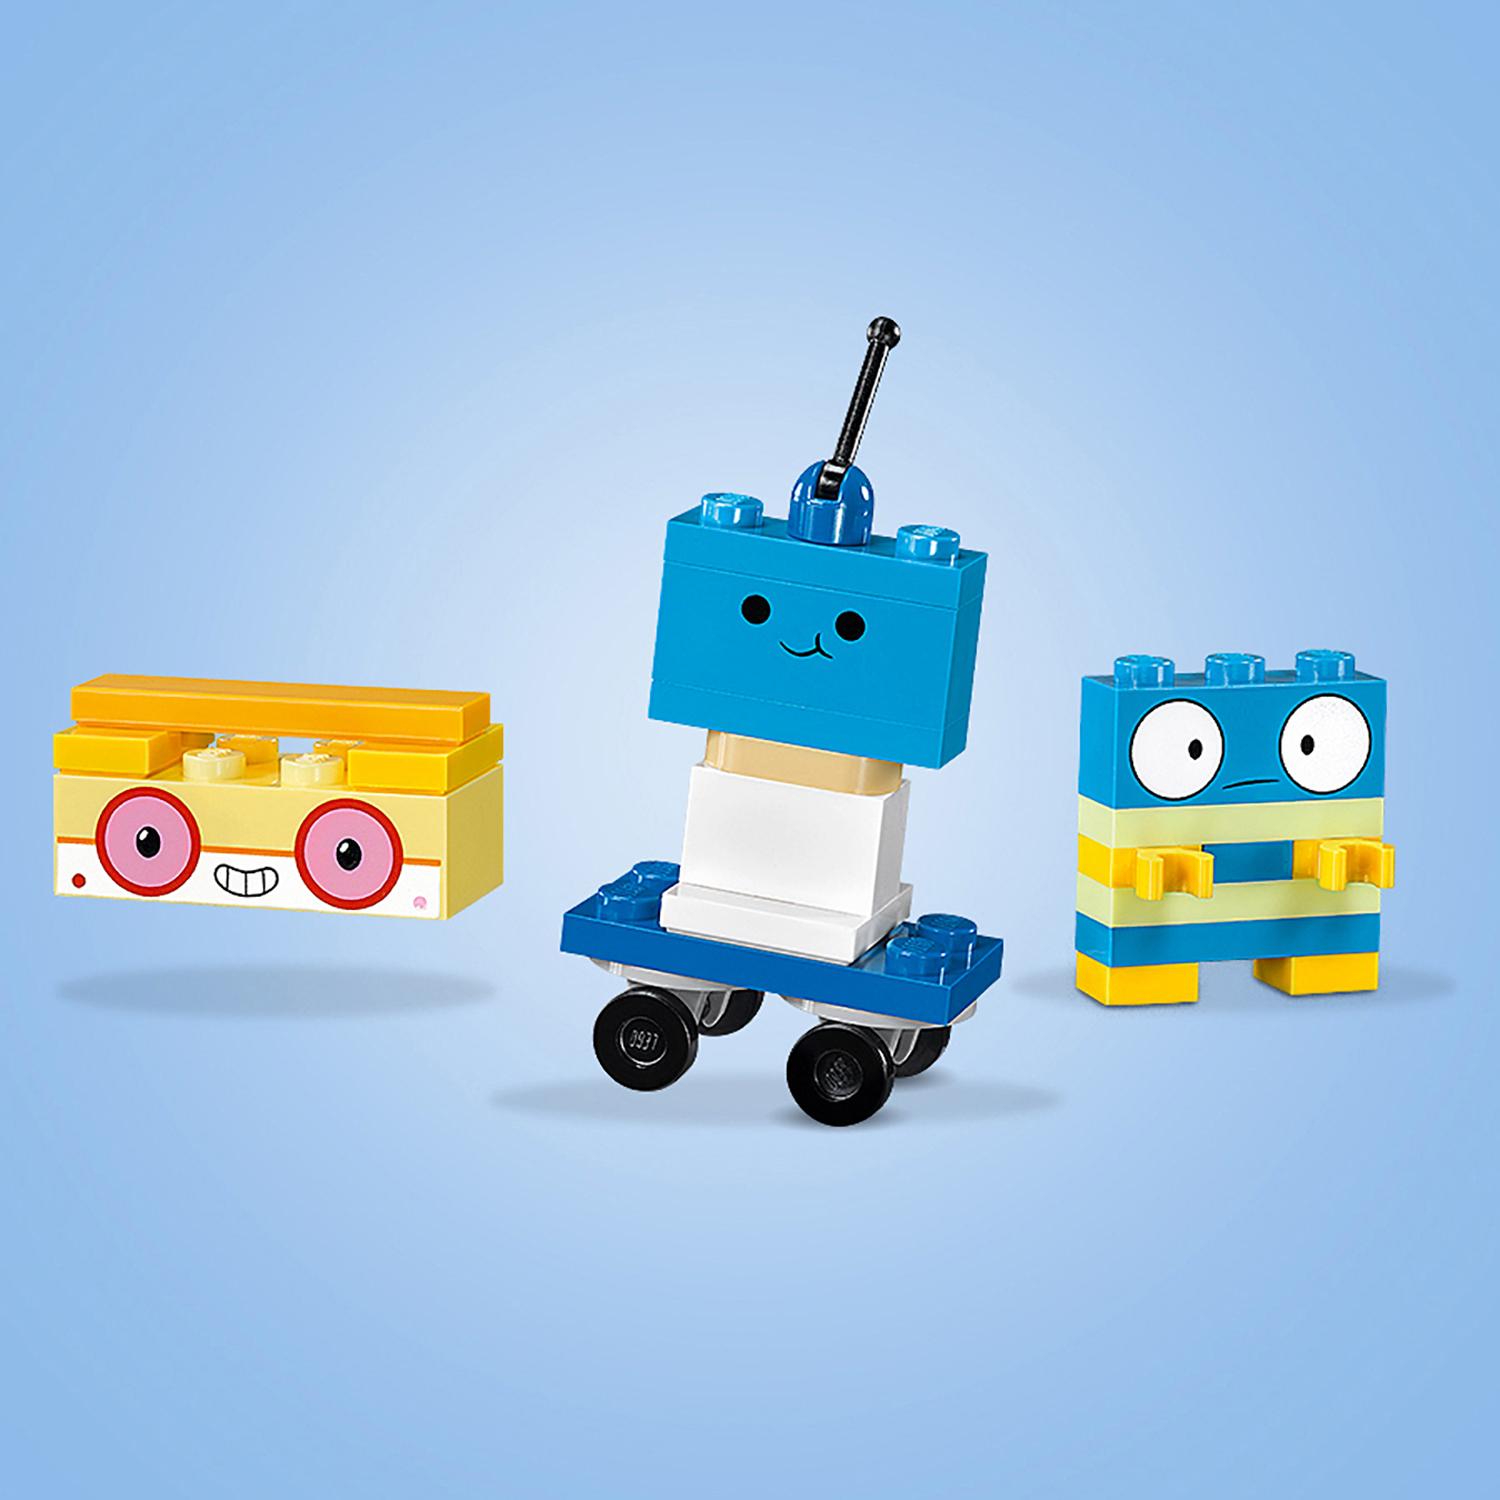 Конструктор Lego Юникитти - Коробка кубиков для творческого конструирования Королевство  